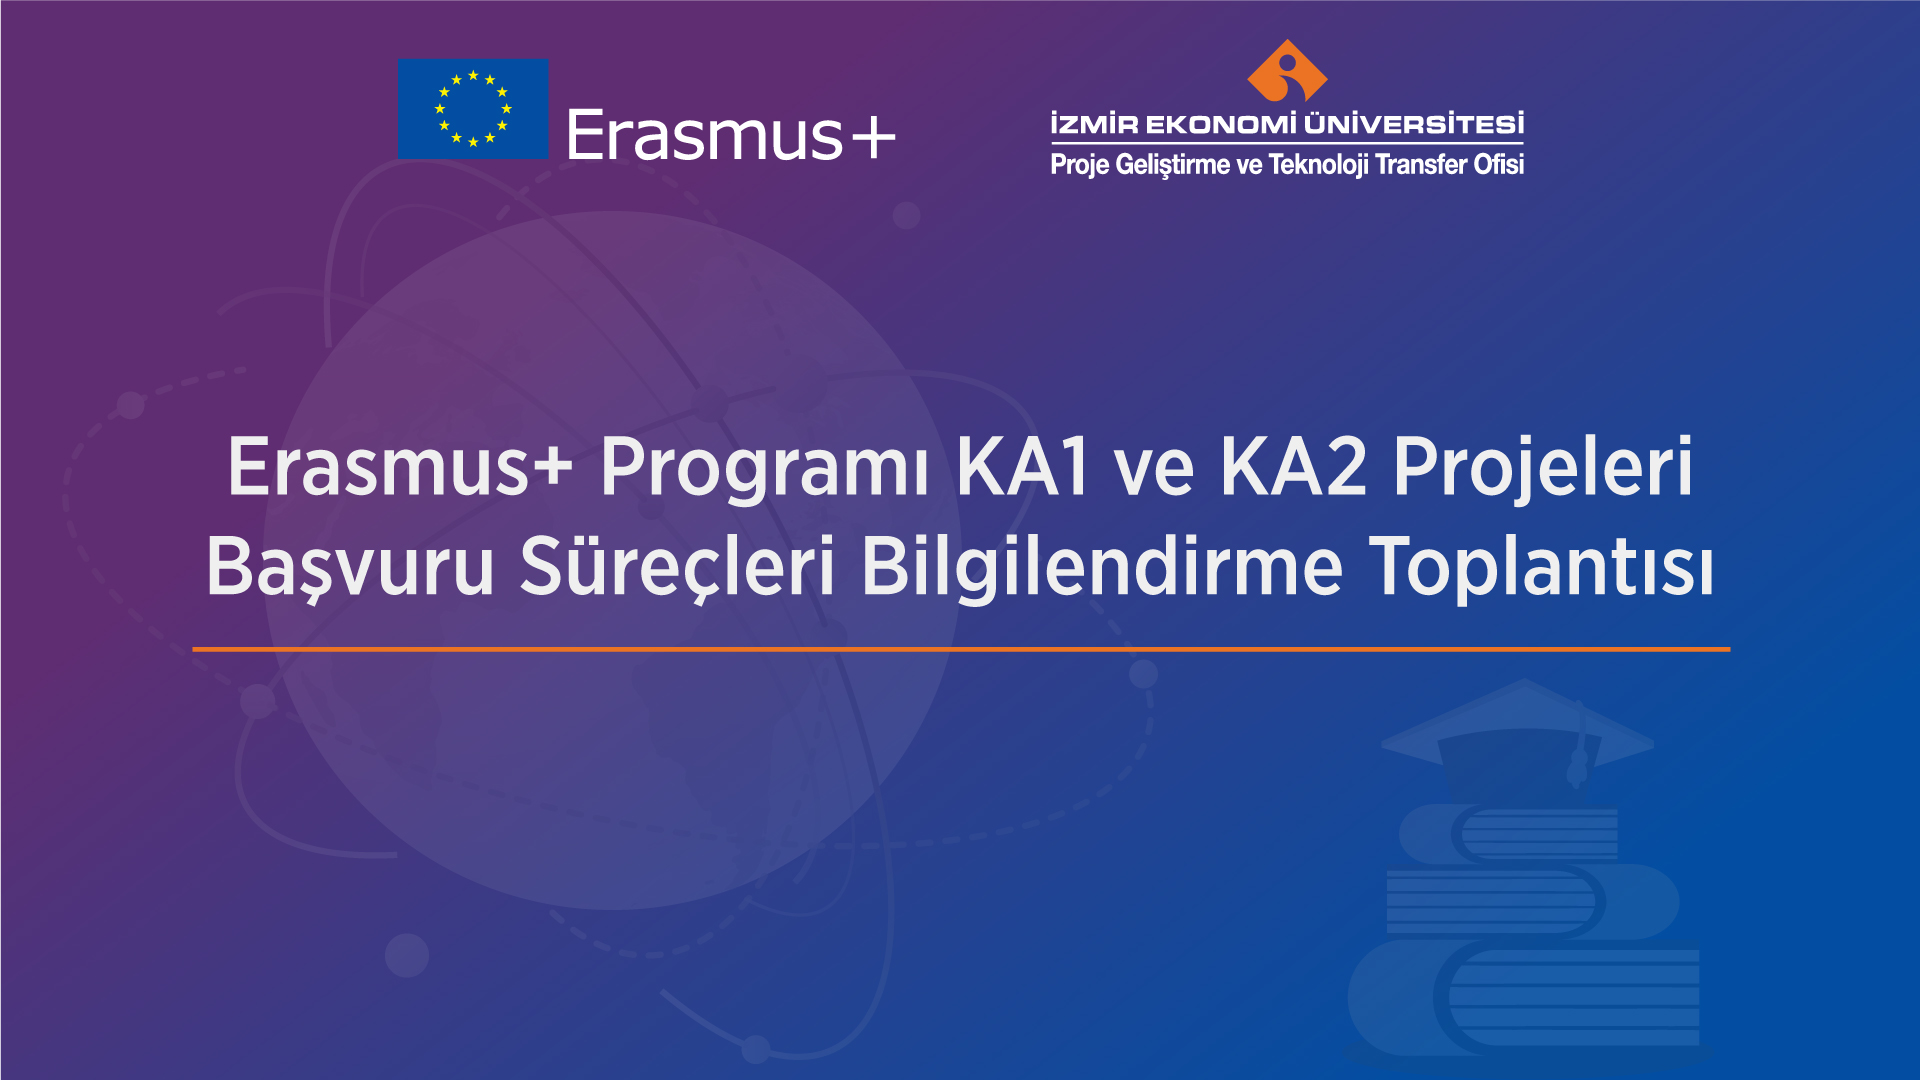 Erasmus+ Programı Başvuru Süreçleri Bilgilendirme Toplantısı